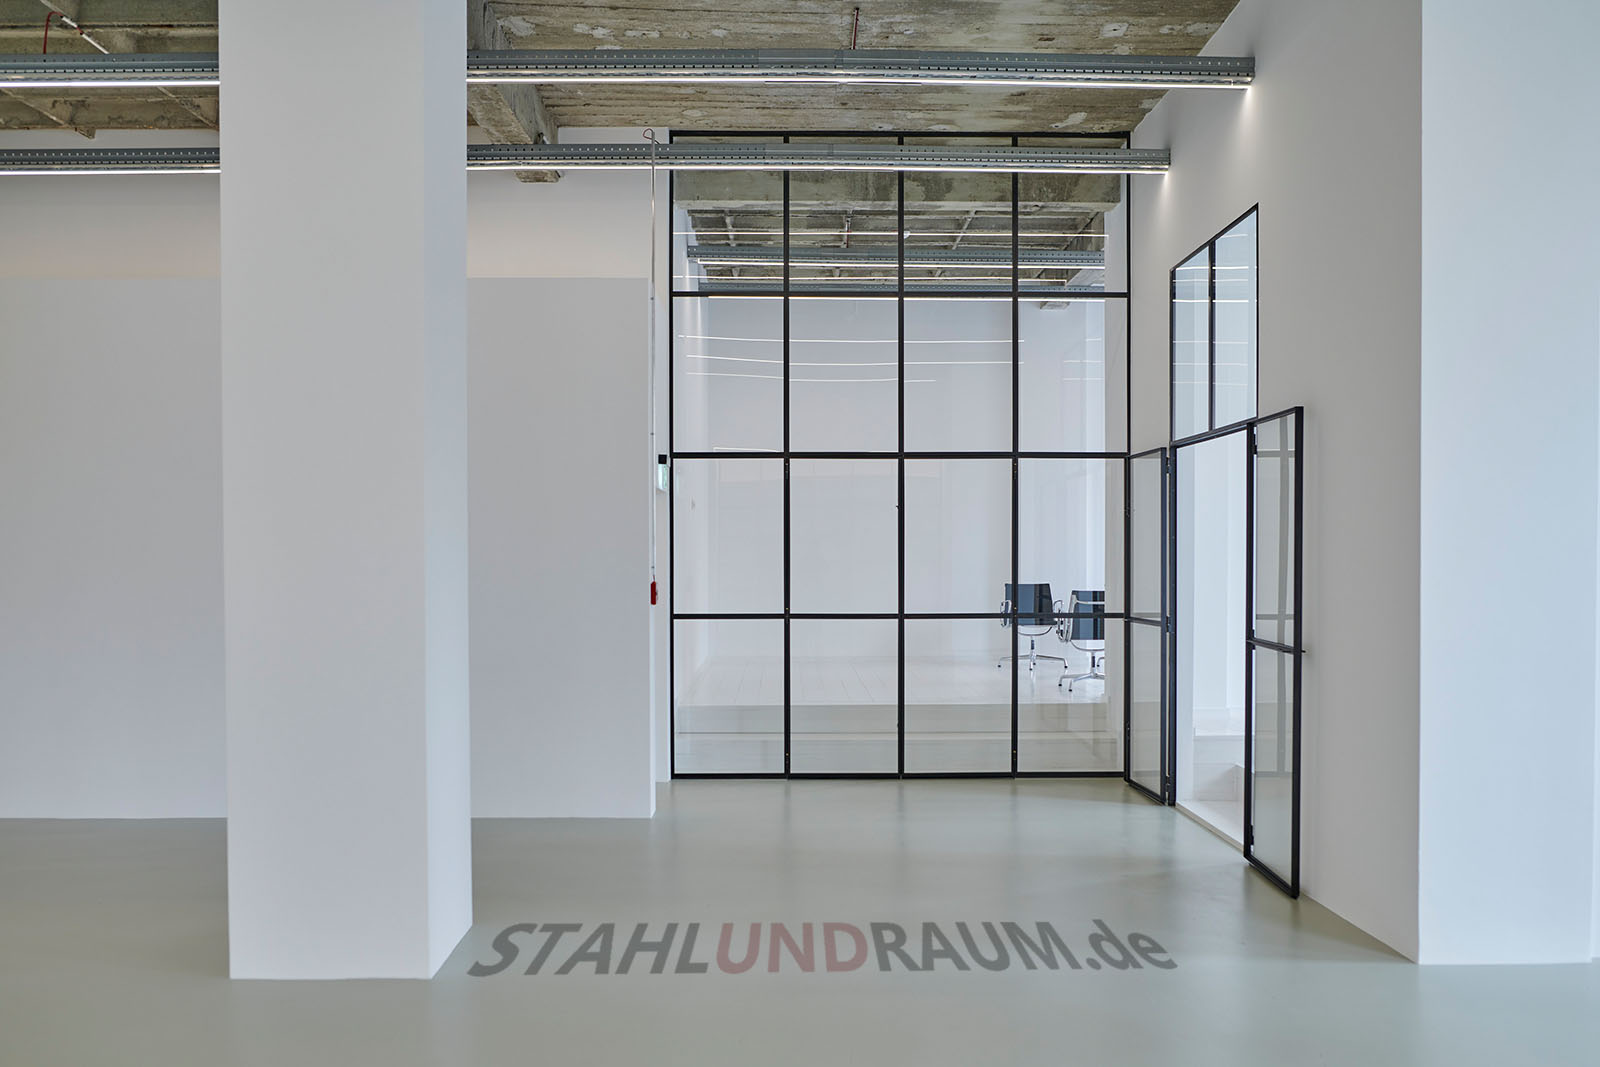 Großer Raumteiler im Büro. Bauhaus und Loft-Design in Stahl und Glas